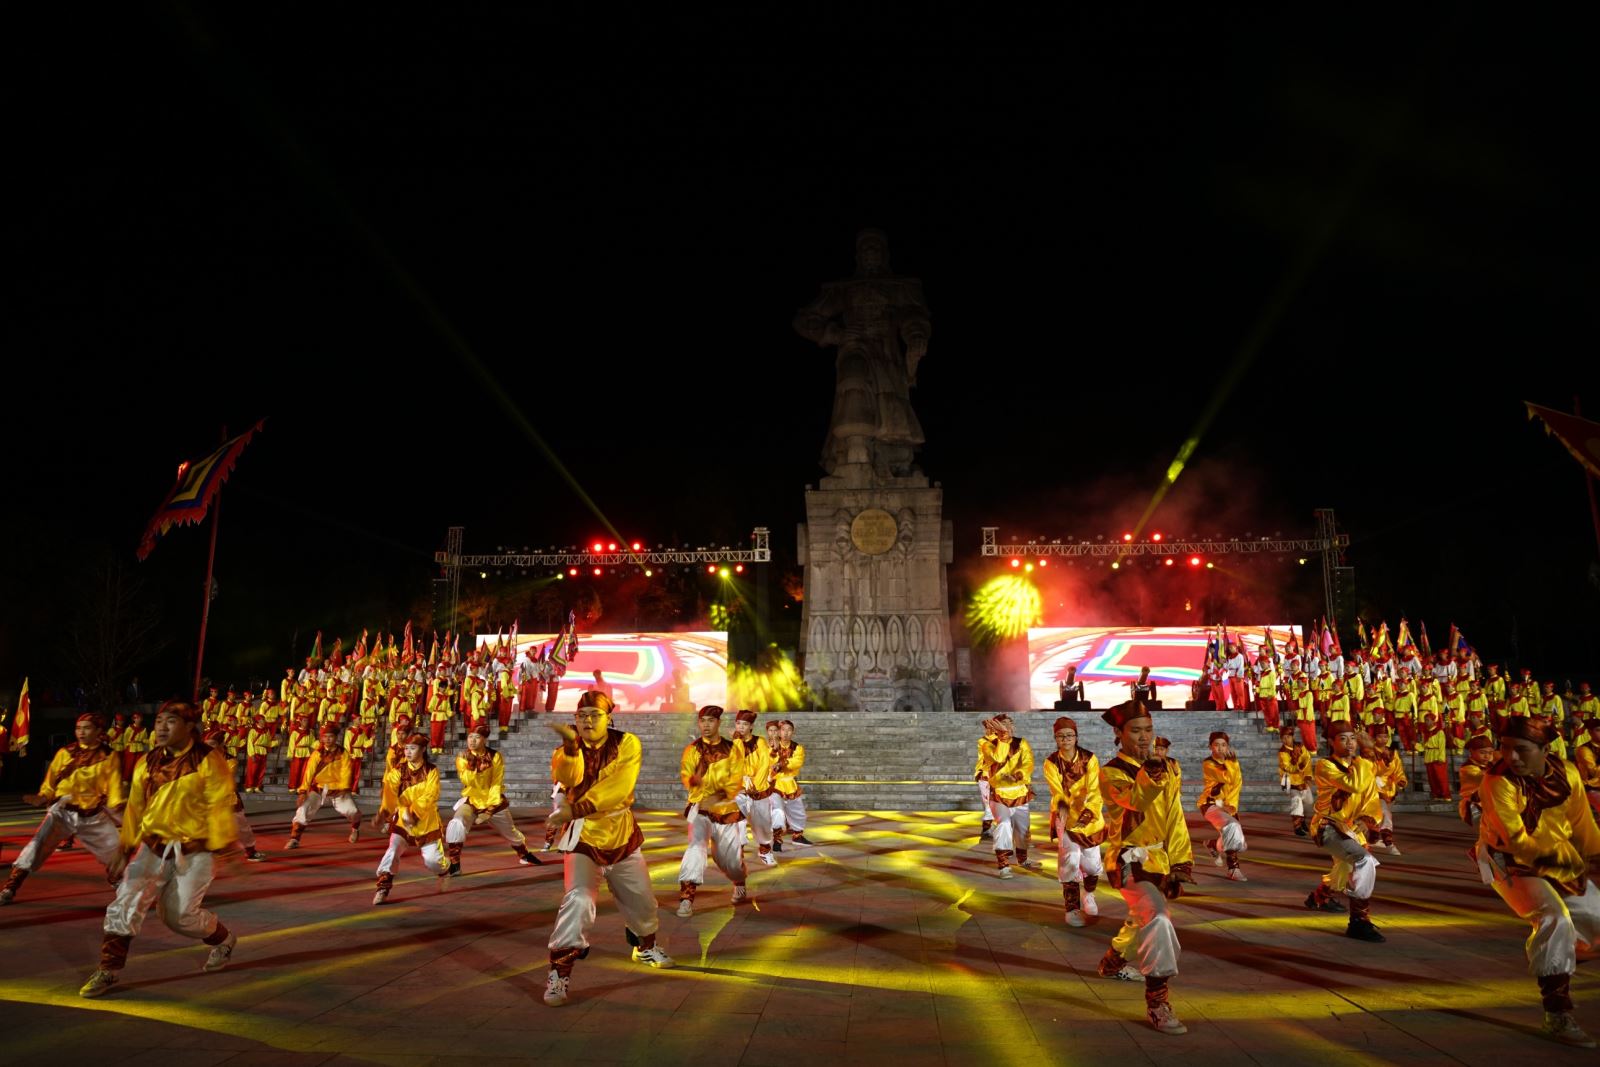 Chương trình nghệ thuật tái hiện lễ lên ngôi và đại phá quân Thanh của Hoàng đế Quang Trung diễn ra sinh động và ý nghĩa với 4 phần, bao gồm: hội binh, lễ lên ngôi, xuất binh- đánh trận, khúc khải hoàn.